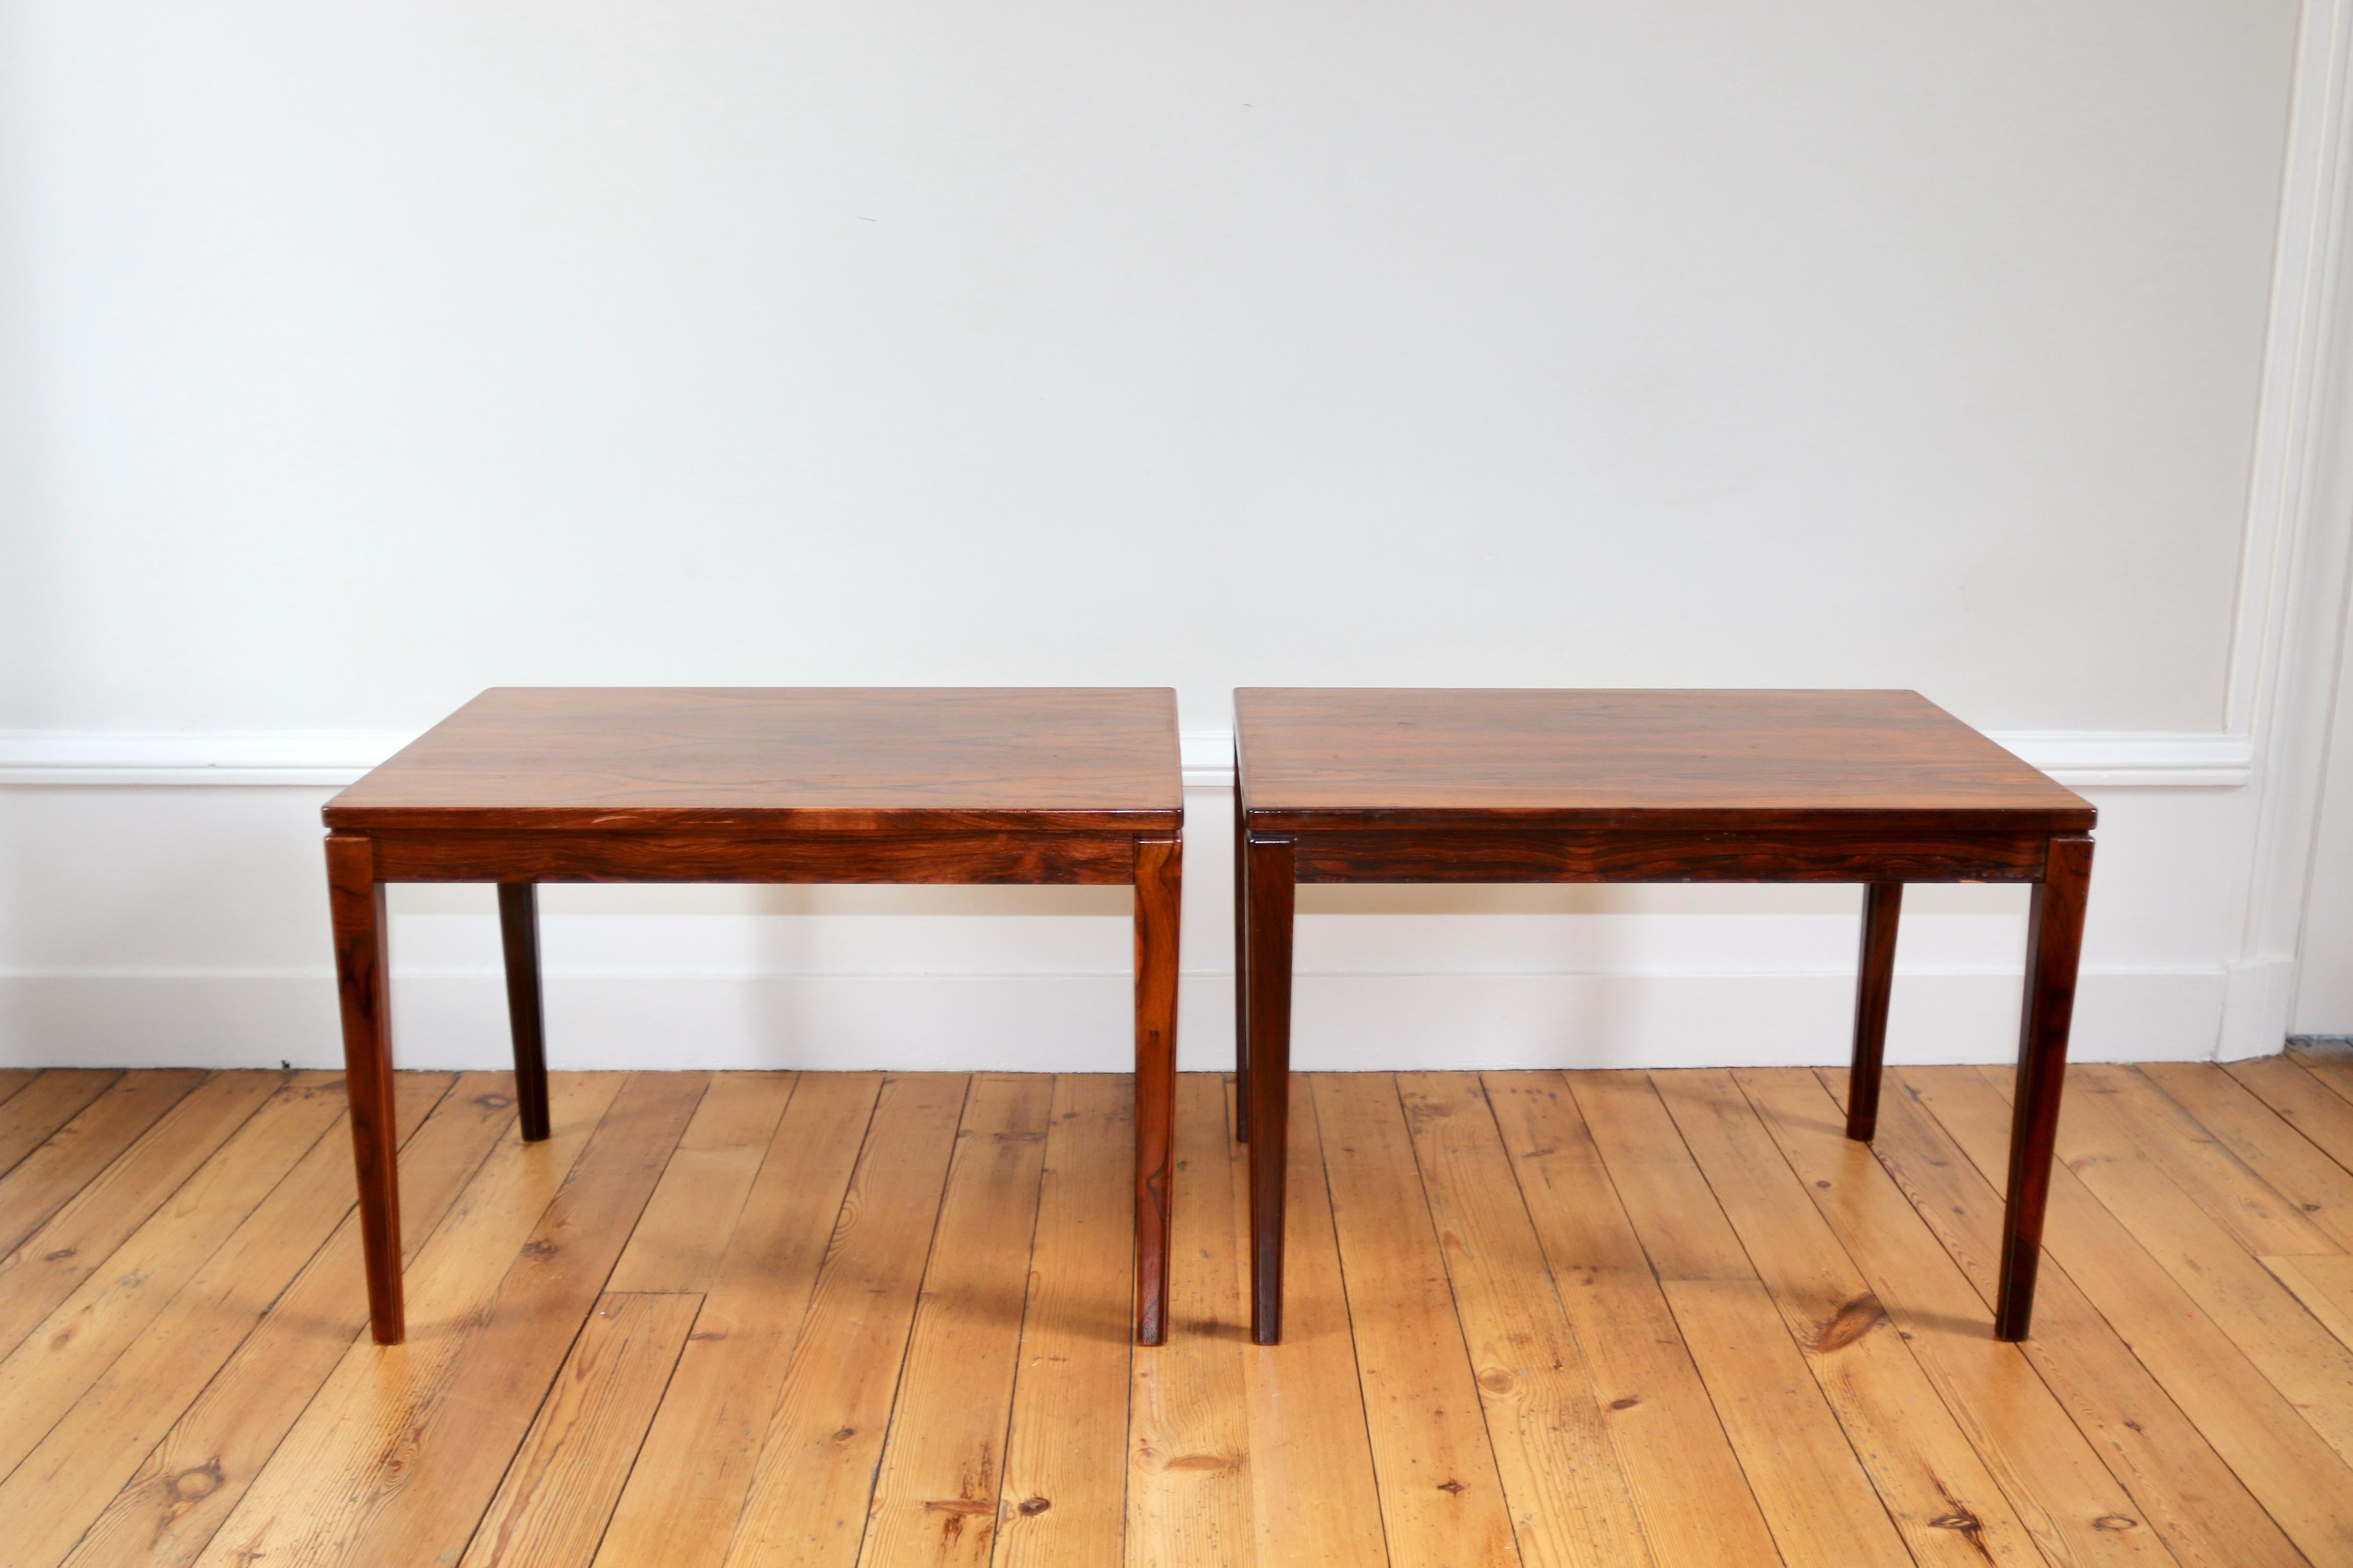 Zwei Tische aus Palisander aus Rio aus den 60er Jahren

in ausgezeichnetem Zustand

Abmessungen : largeur 45 cm x longueur 65 cm x hauteur 45 cm